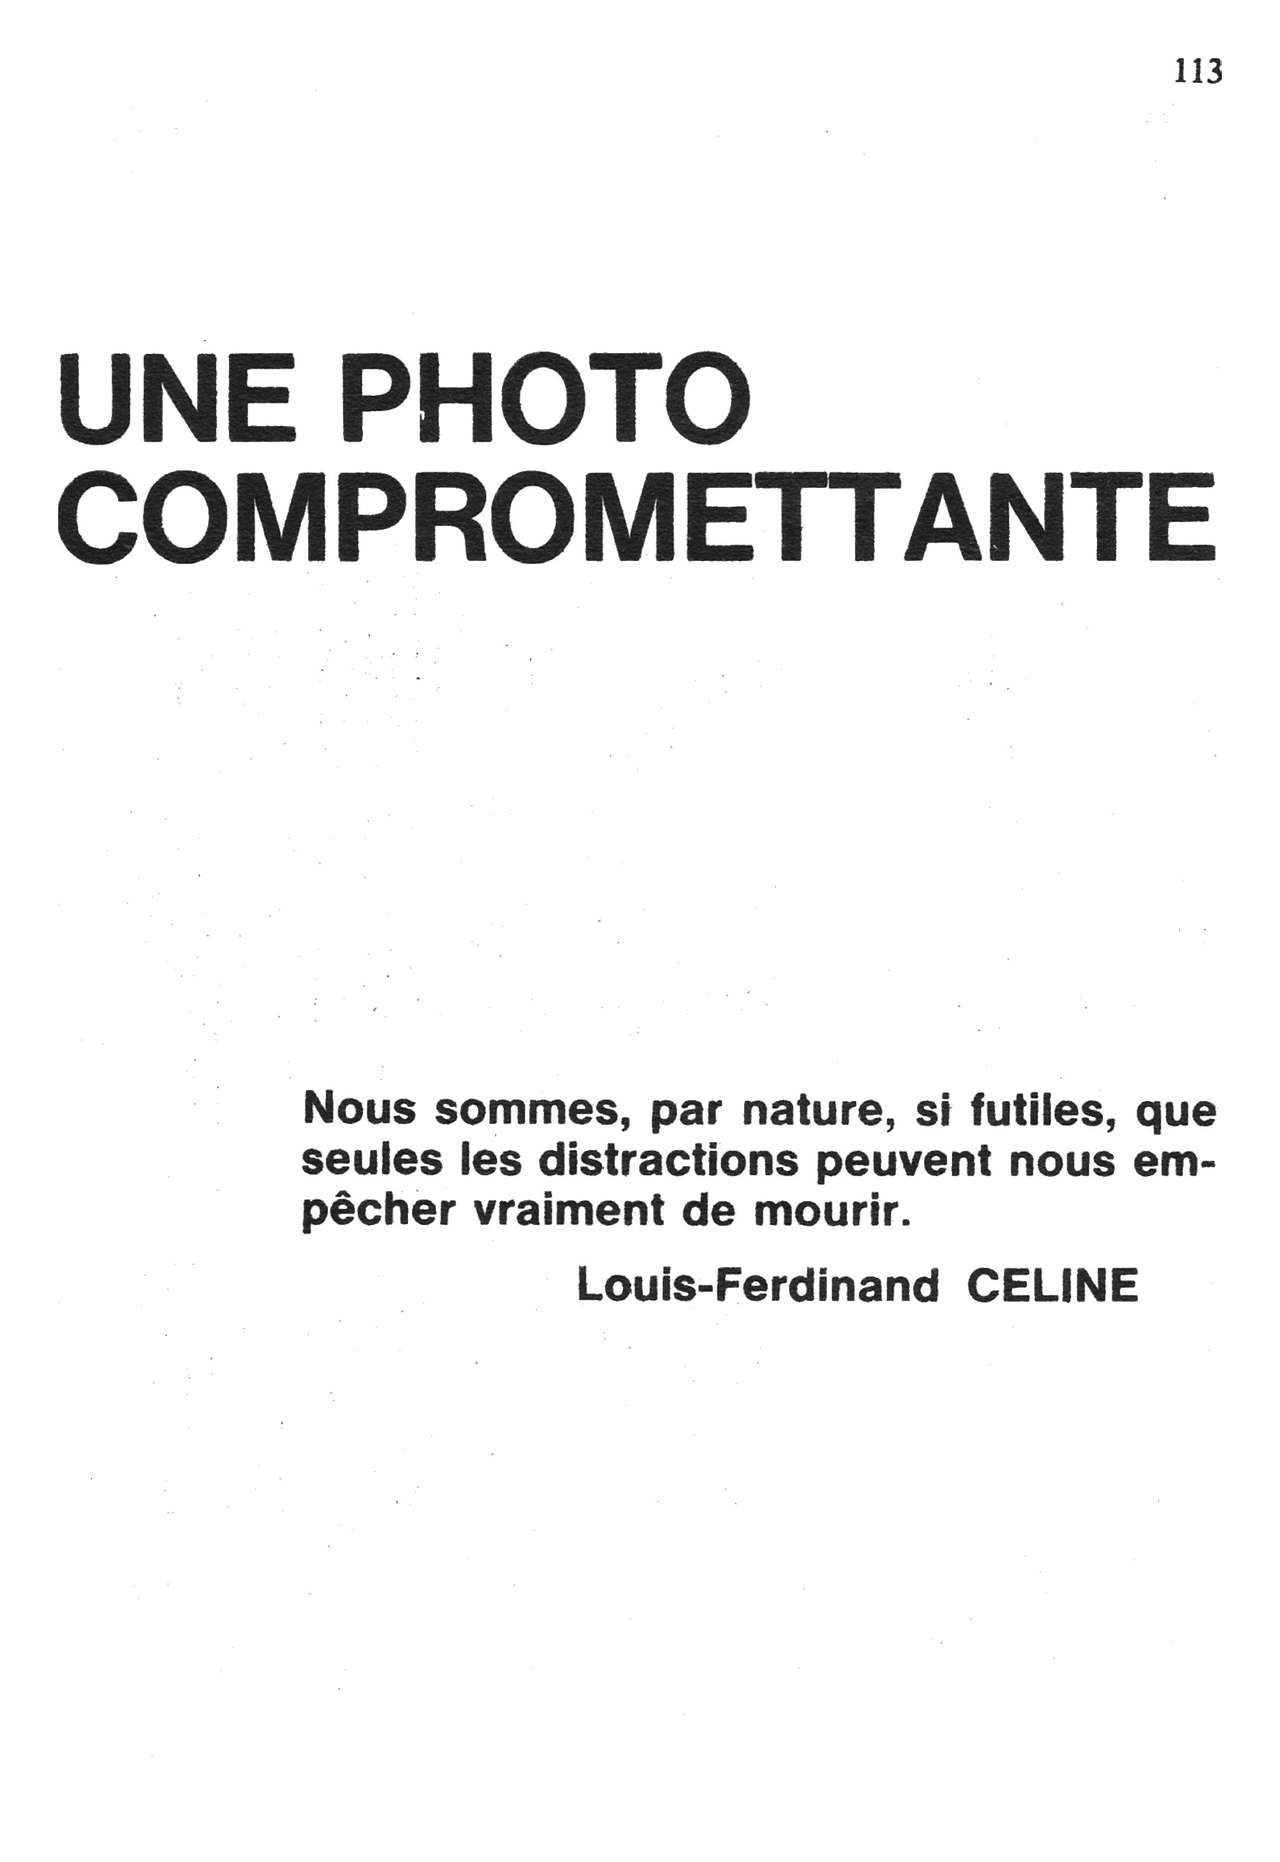 Elvifrance - Série bleue - 052 - Le retour de Frédéric Wladiv numero d'image 114